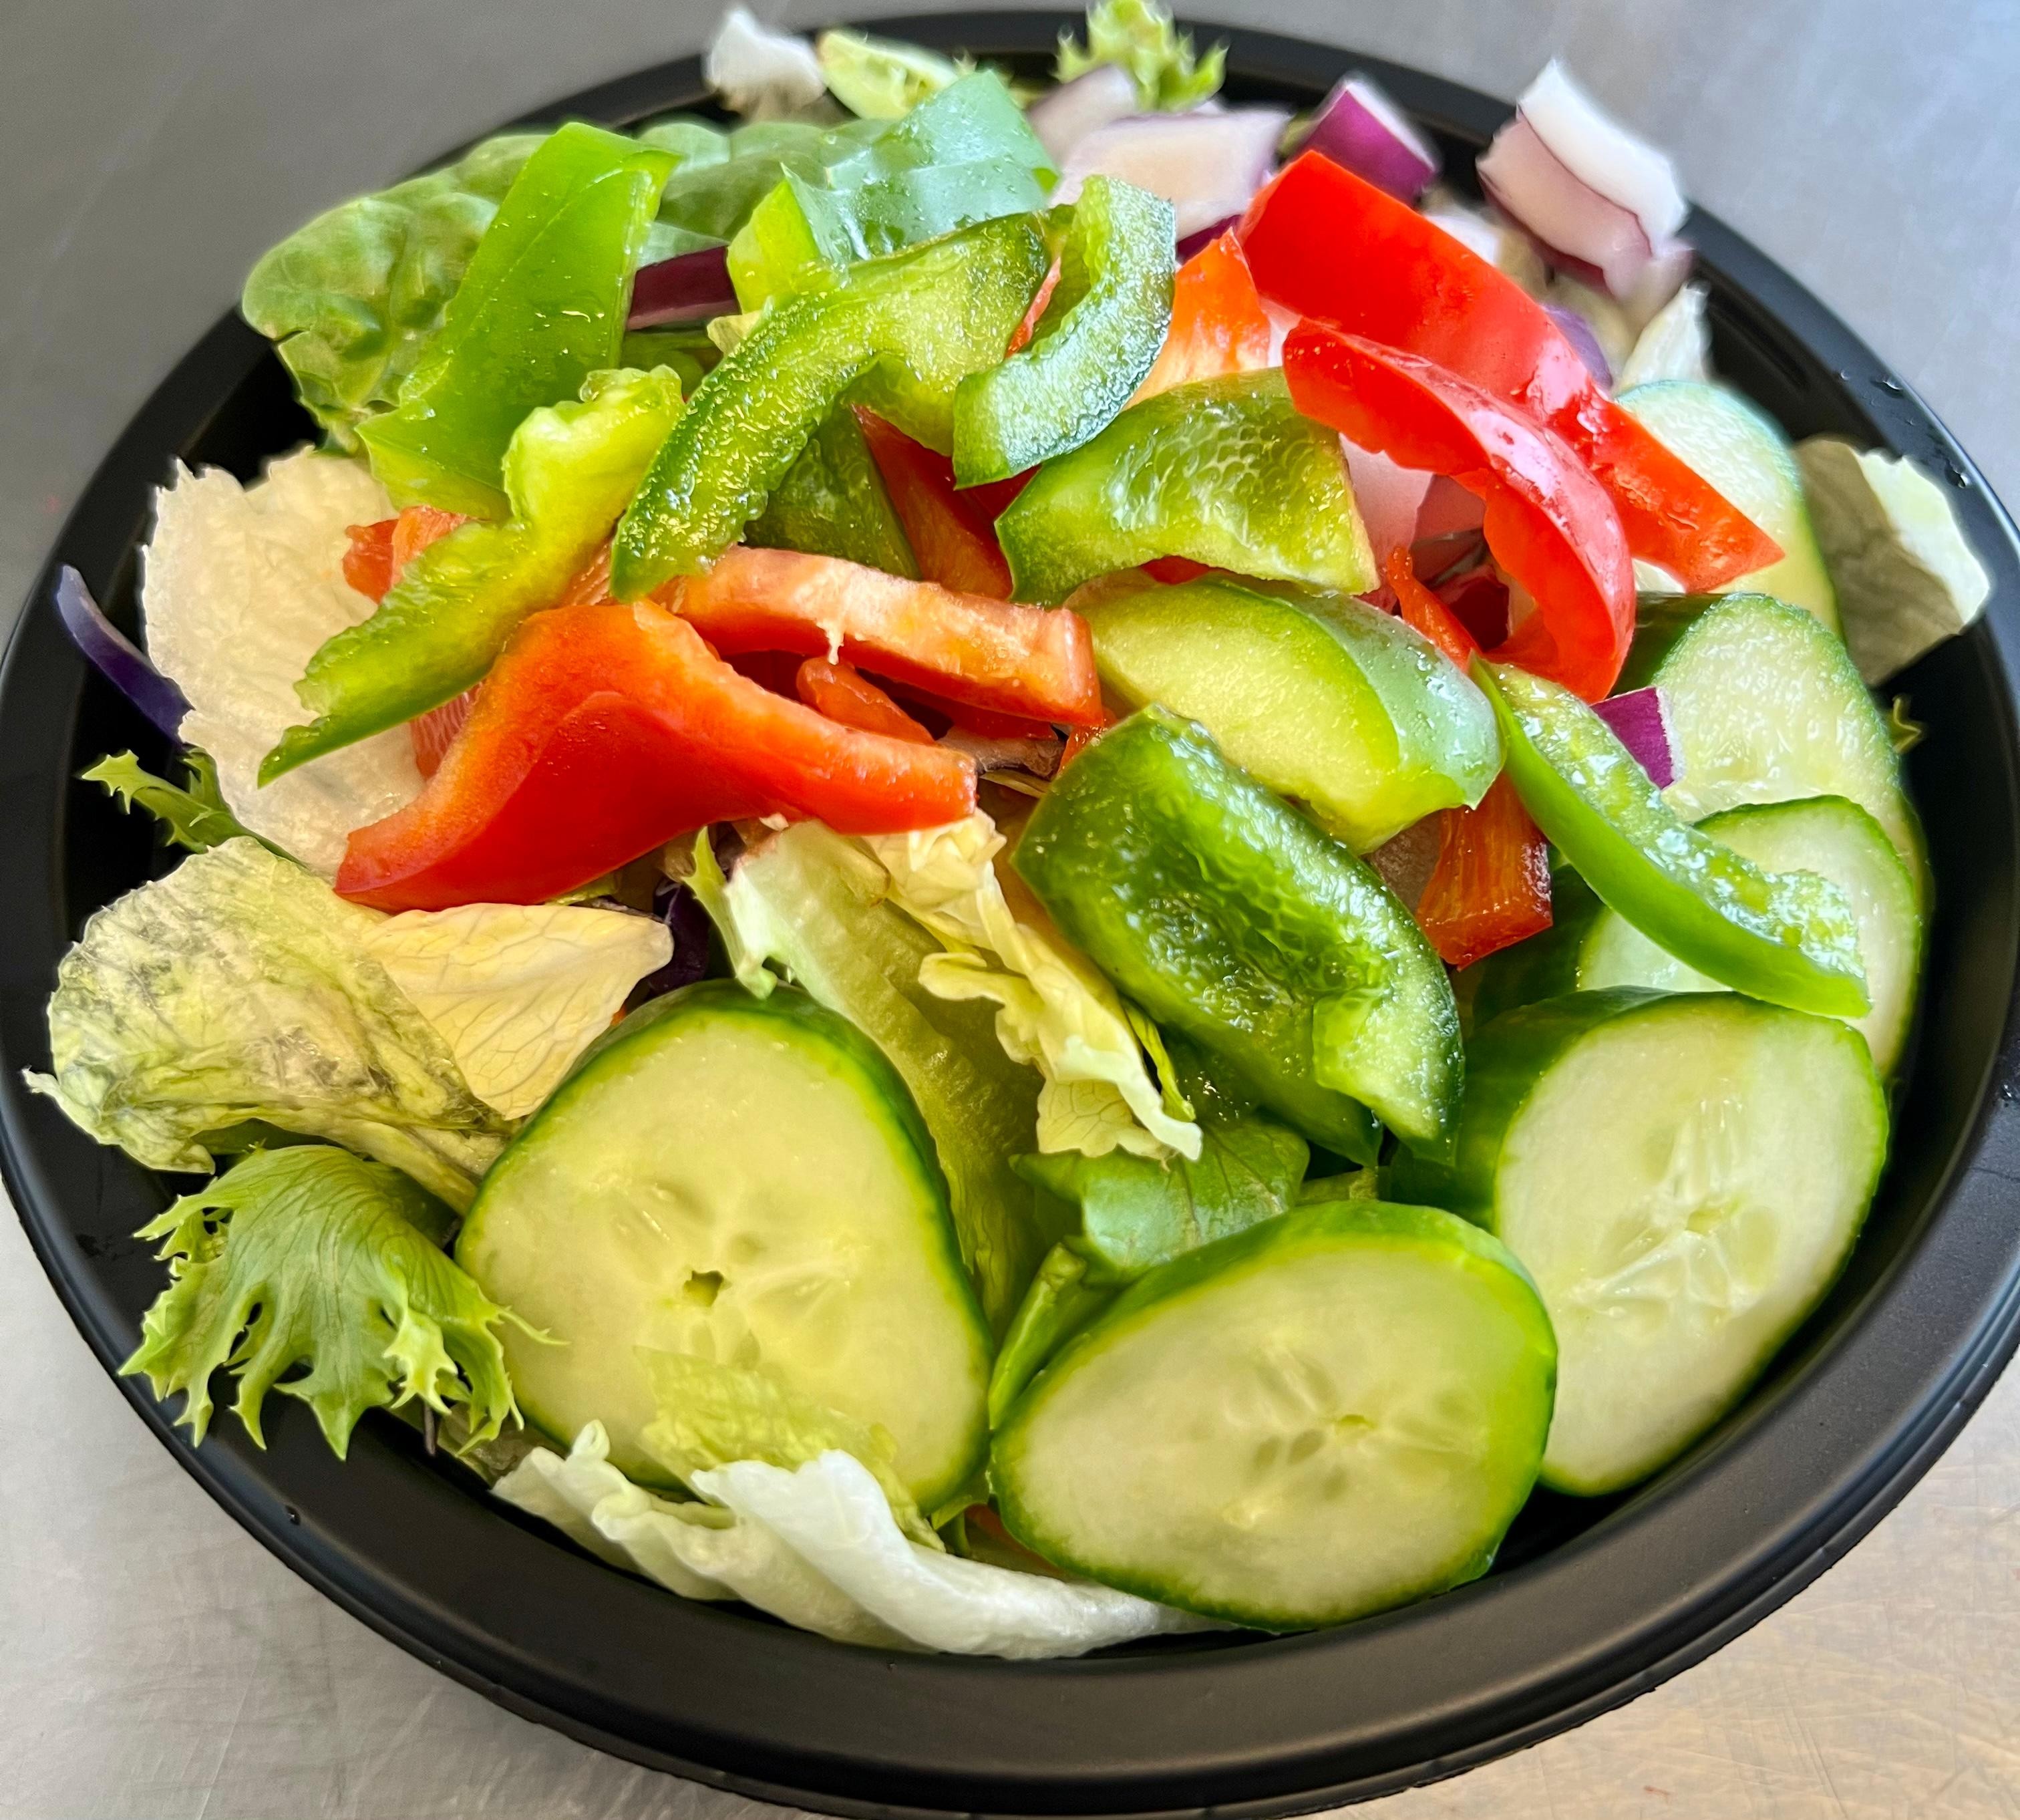 Salad Bowls